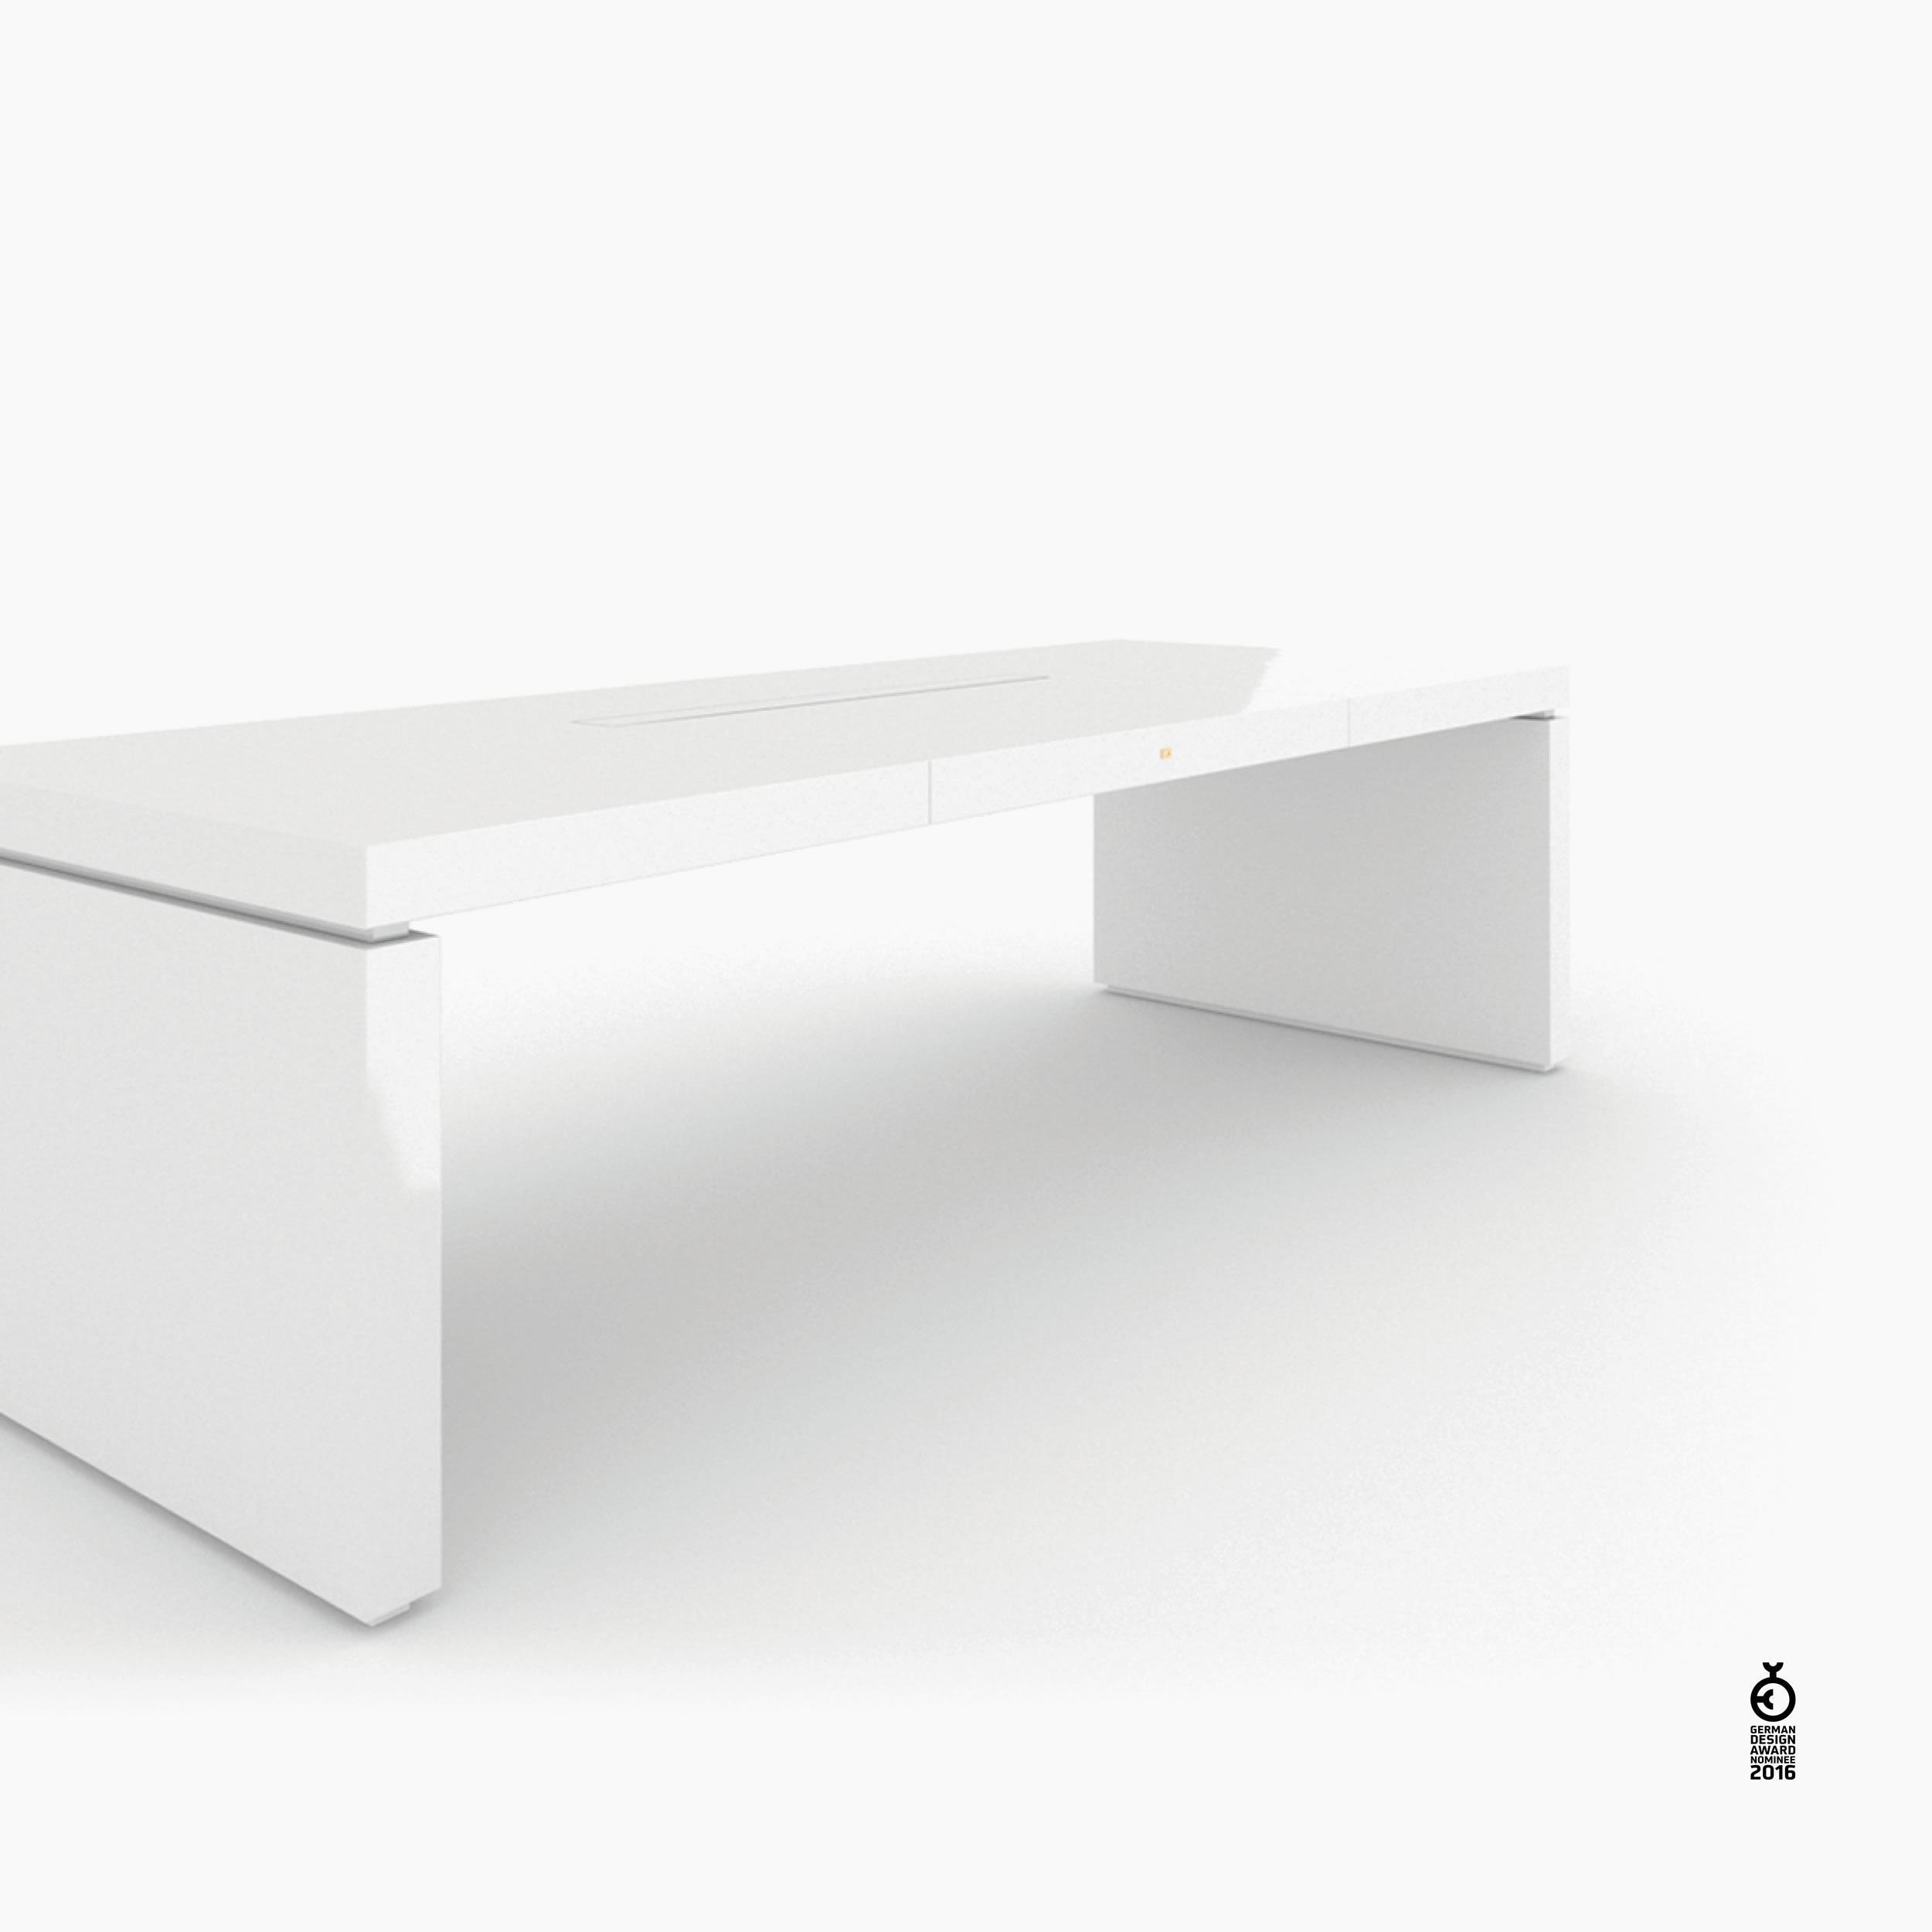 Schreibtischig weiss contemporarydesign Chefzimmer interior ispiration Schreibtische FS 97 FELIX SCHWAKE